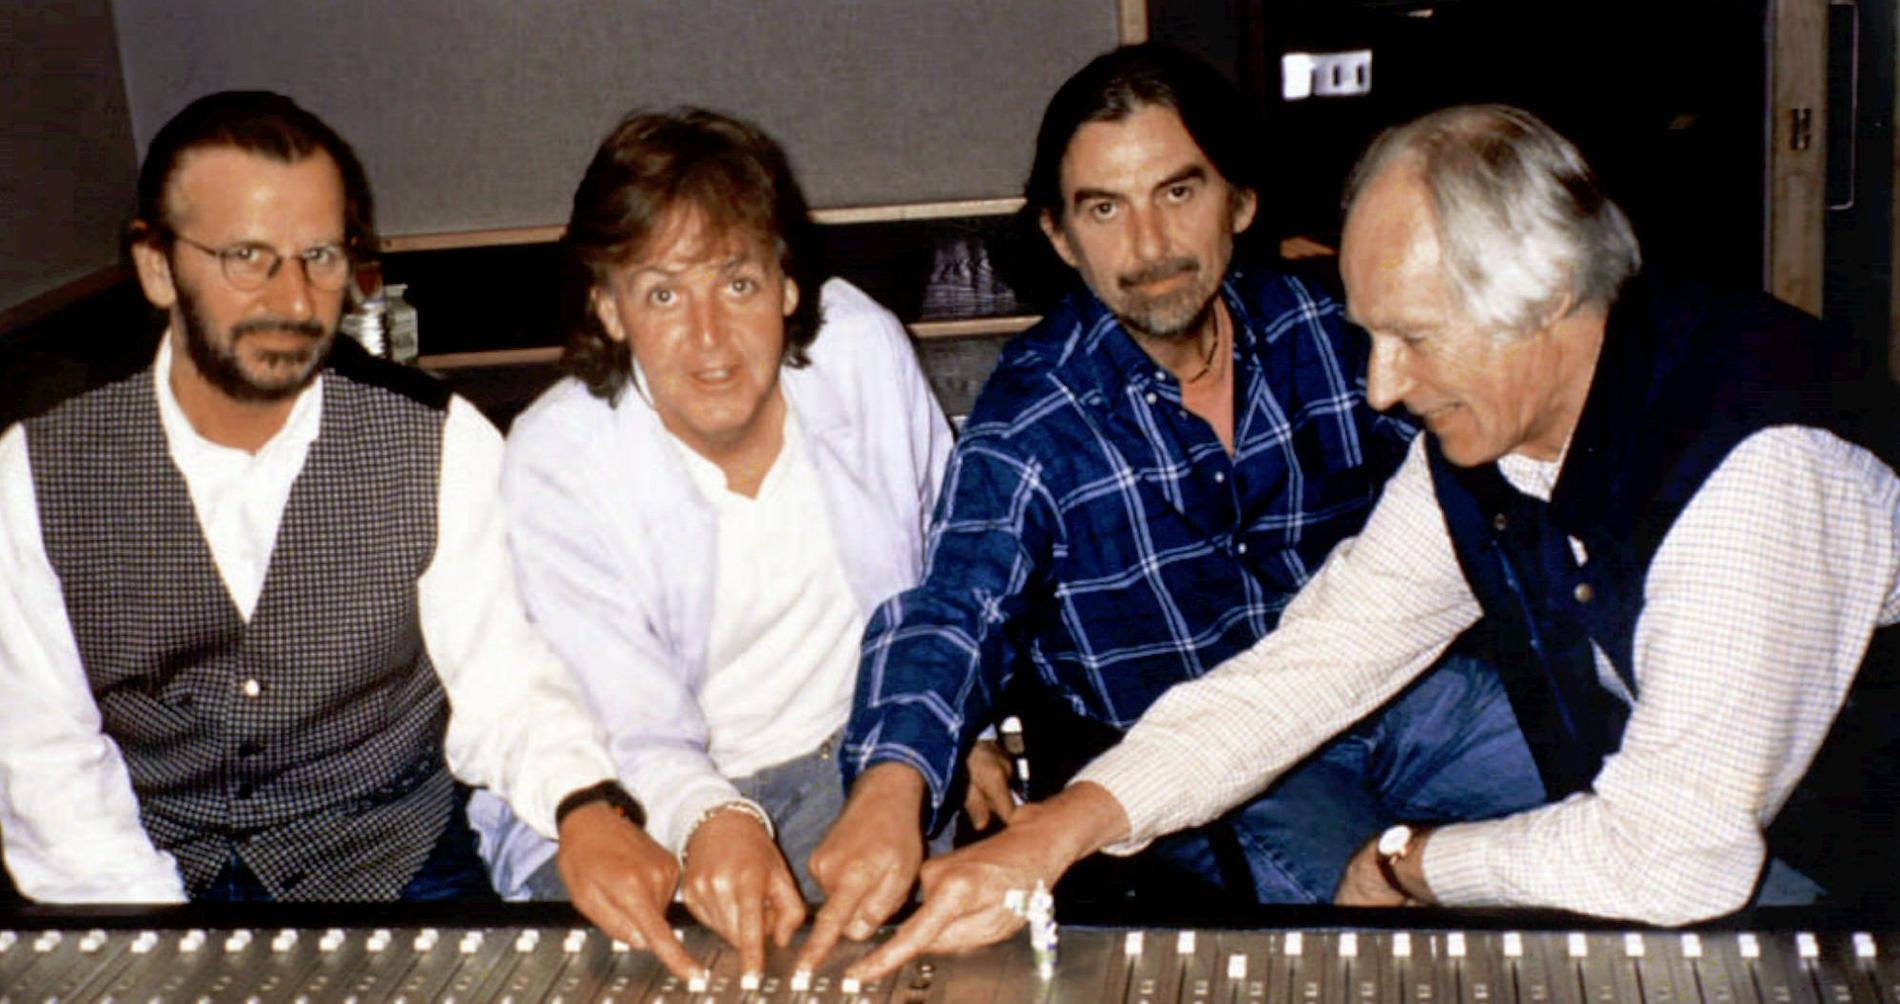 Ringo Starr, Paul McCartney, George Harrison tillsammans med George Martin i studion under inspelningen av "Free as a bird"